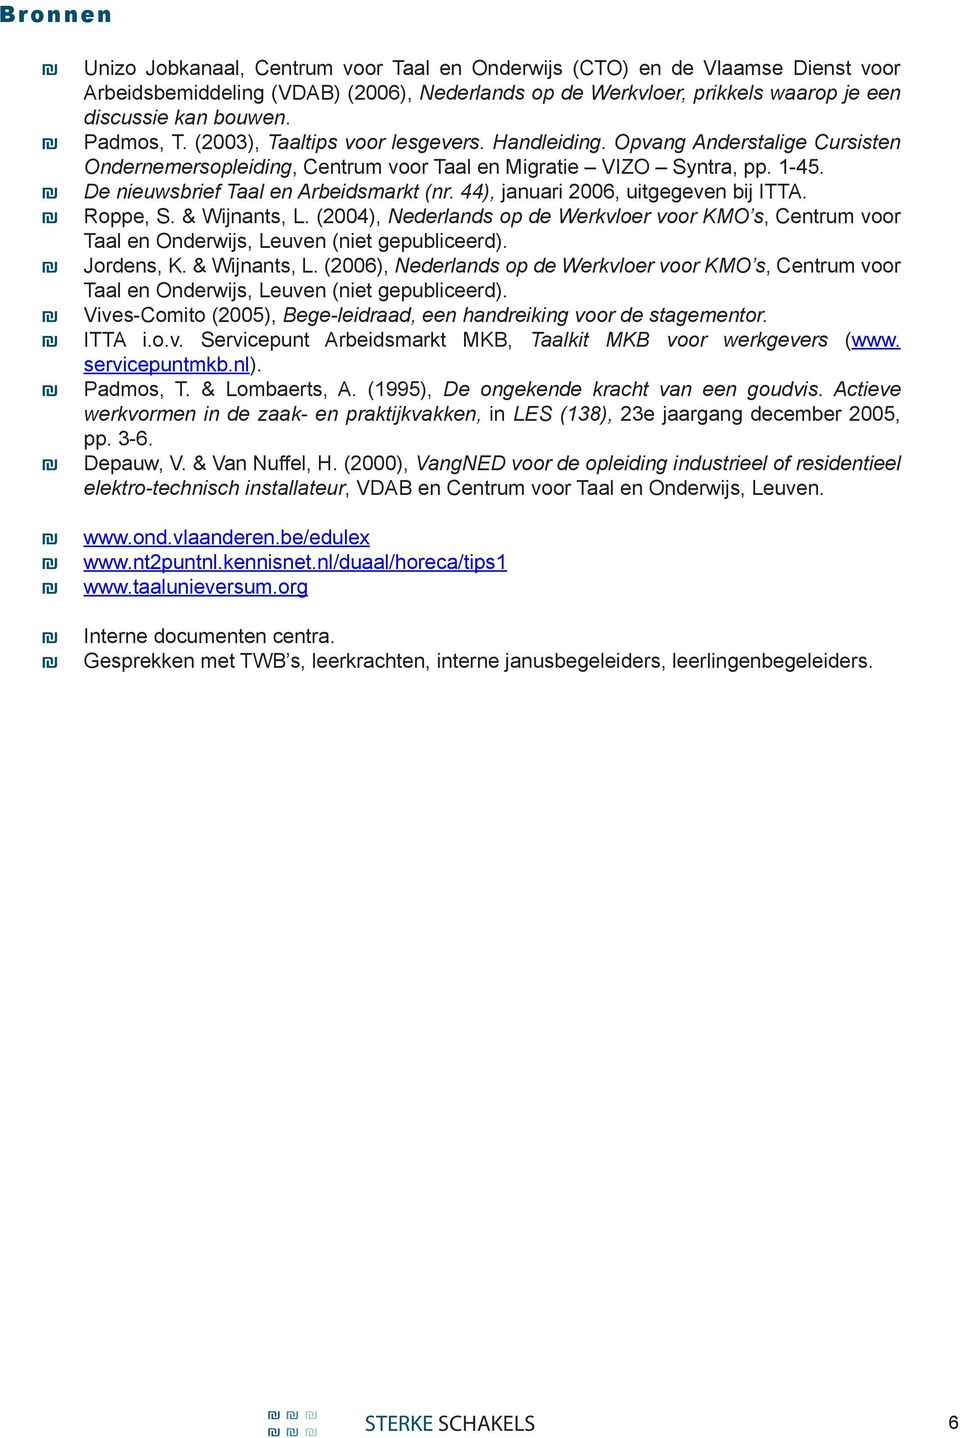 De nieuwsbrief Taal en Arbeidsmarkt (nr. 44), januari 2006, uitgegeven bij ITTA. Roppe, S. & Wijnants, L.